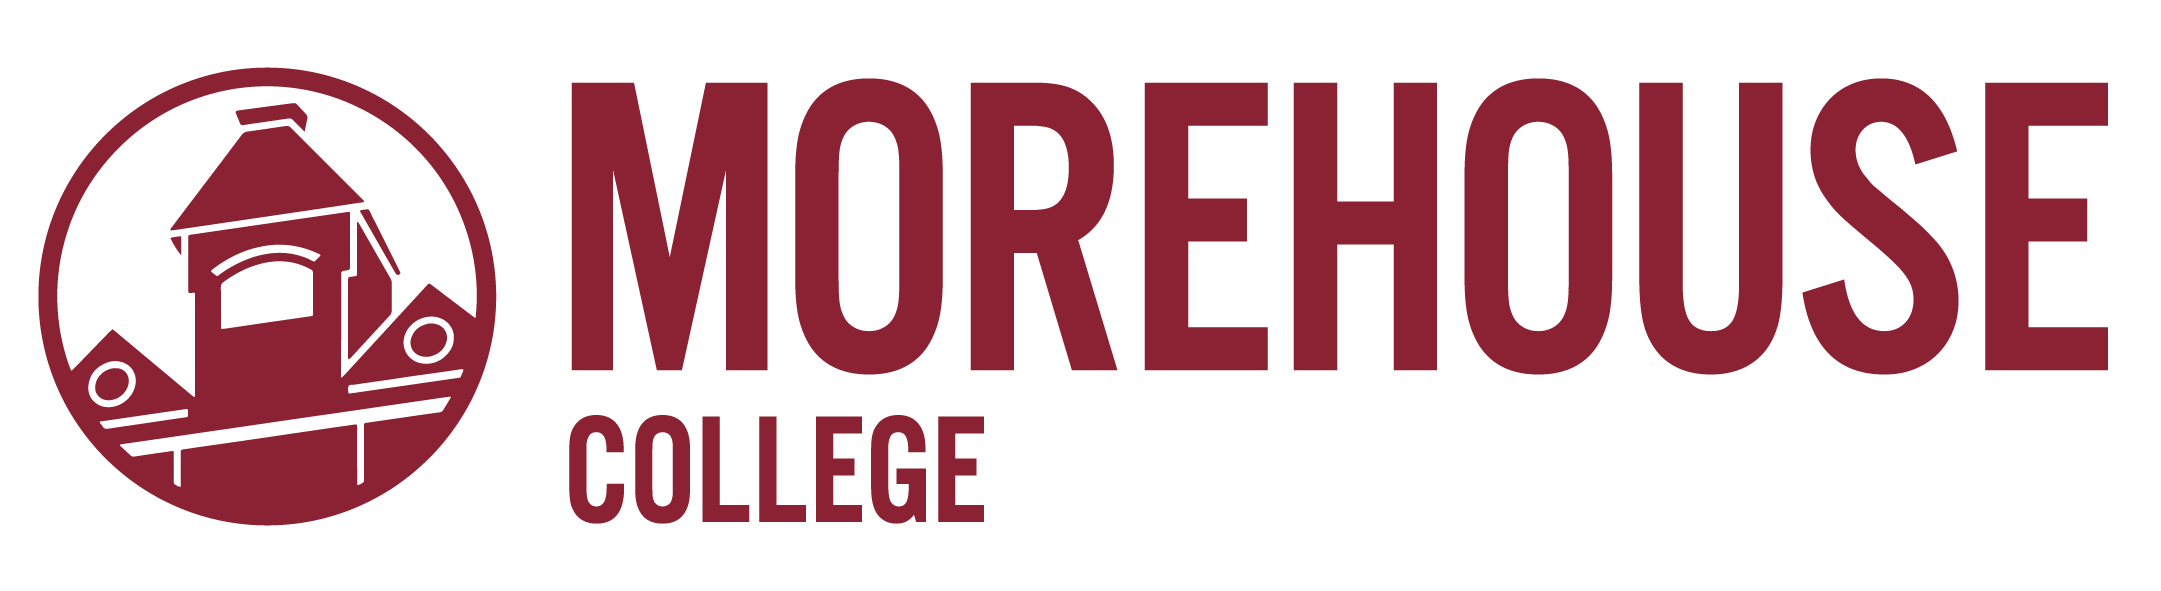 Logotipo de Morehouse College